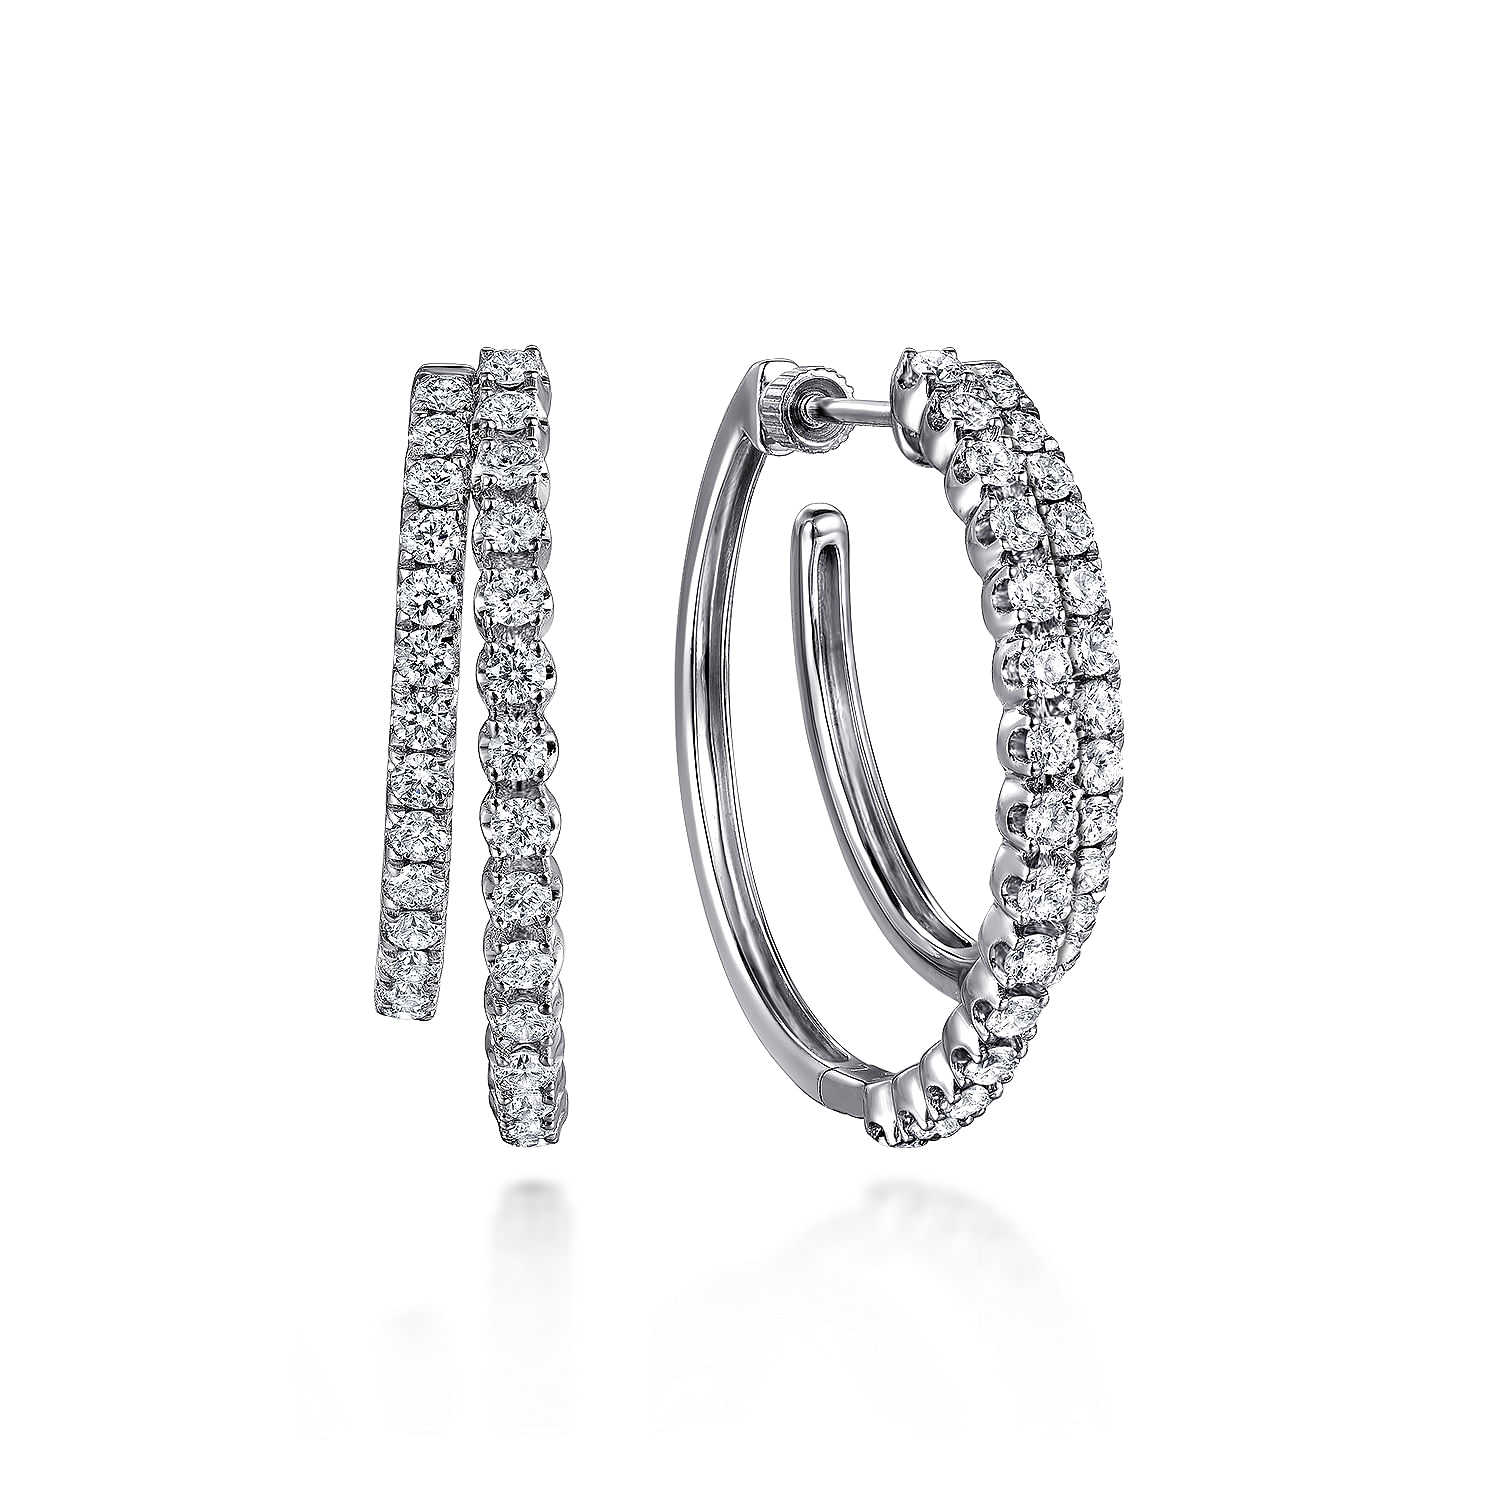 14K White Gold Diamond Intricate Hoop Earrings in size 30mm